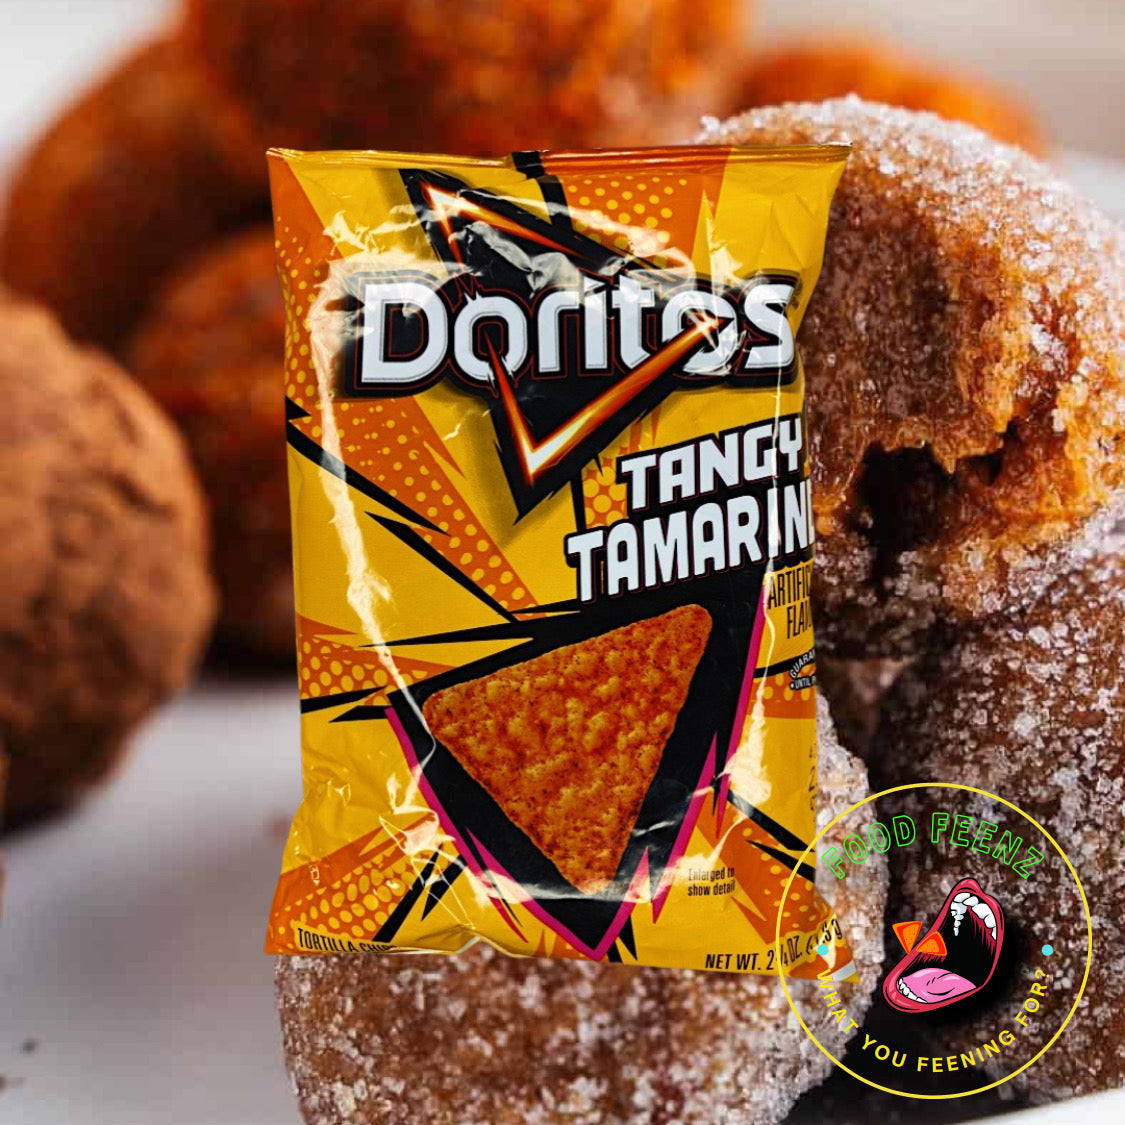 Doritos Tangy Tamarind